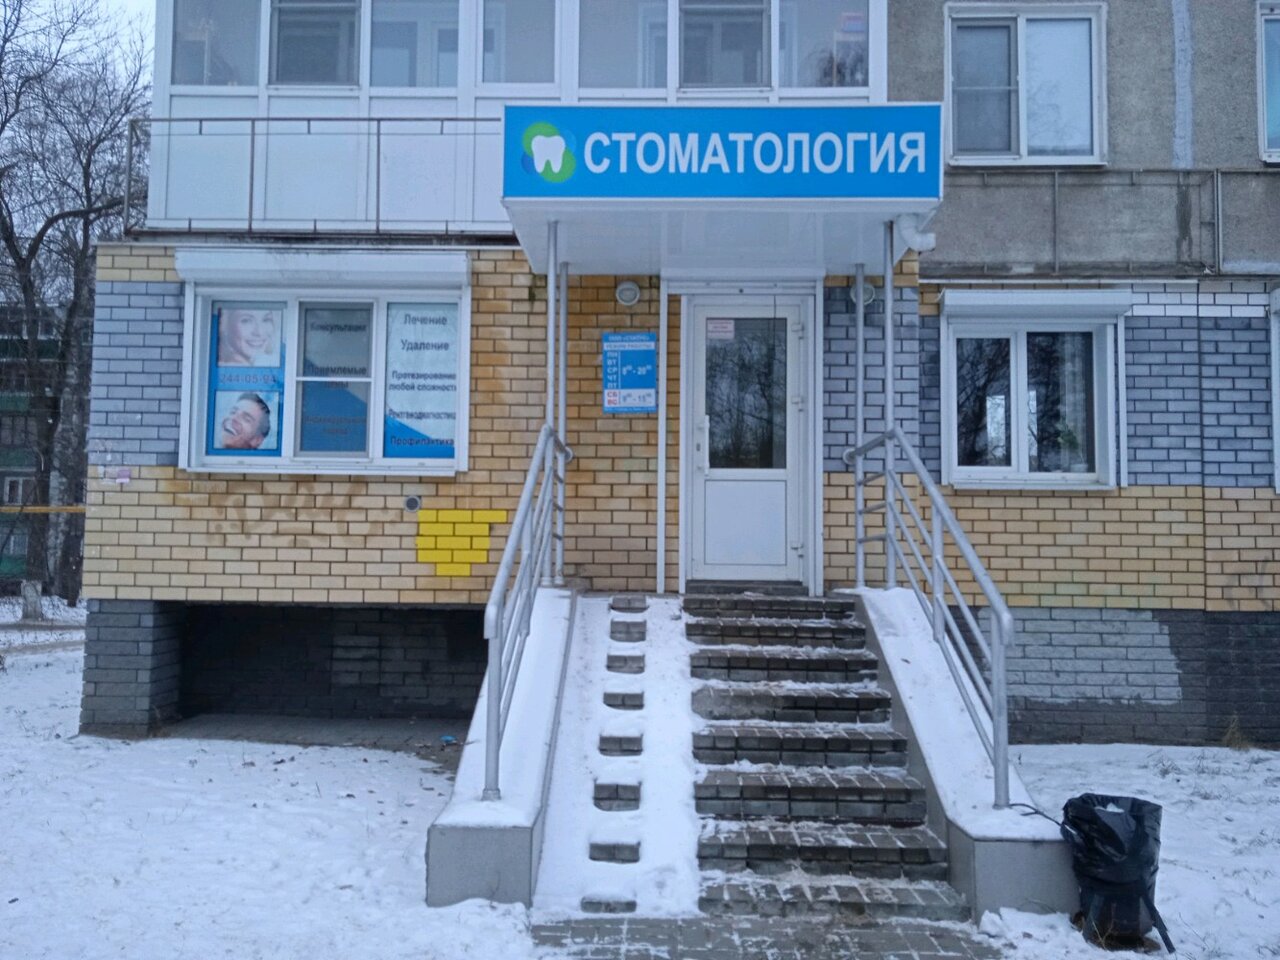 Стоматологическая клиника Статус, Нижний Новгород, пр. Ленина, 41